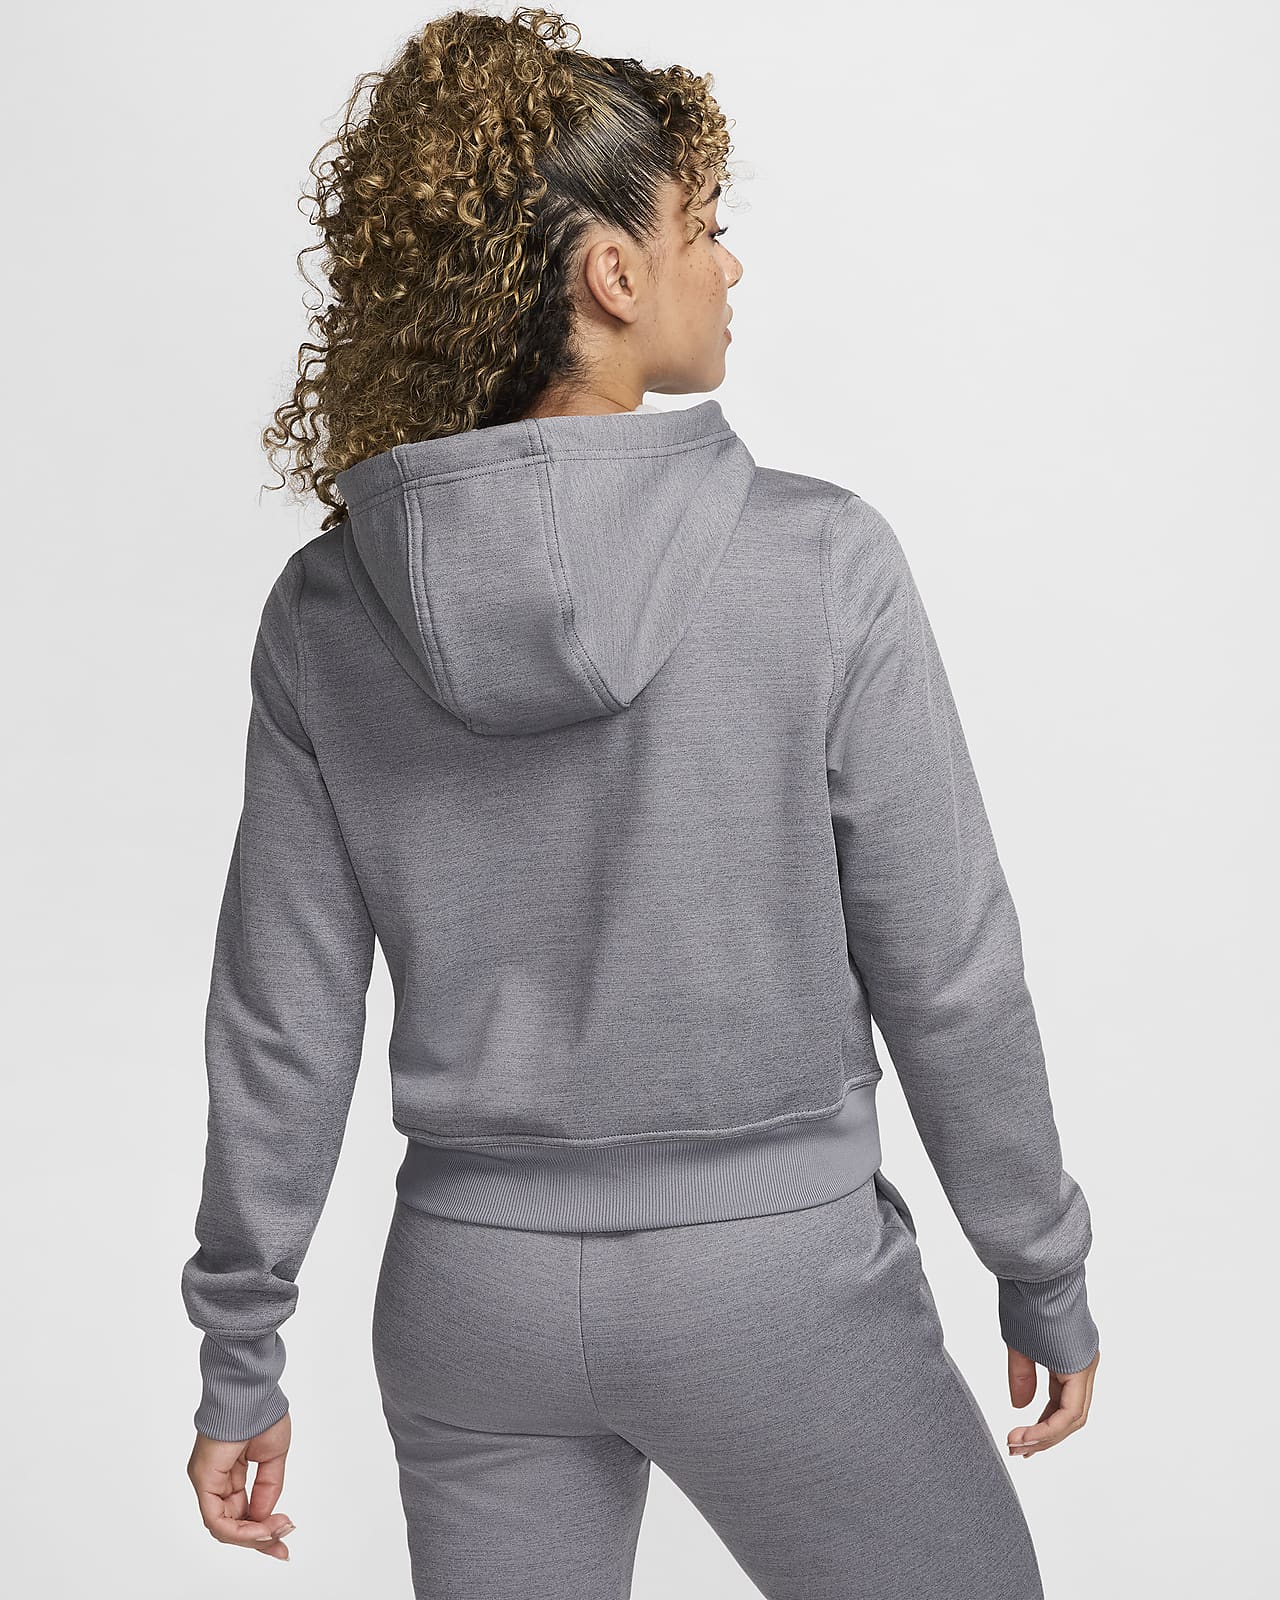 Nike Therma-FIT One Women's Full-Zip Hoodie.